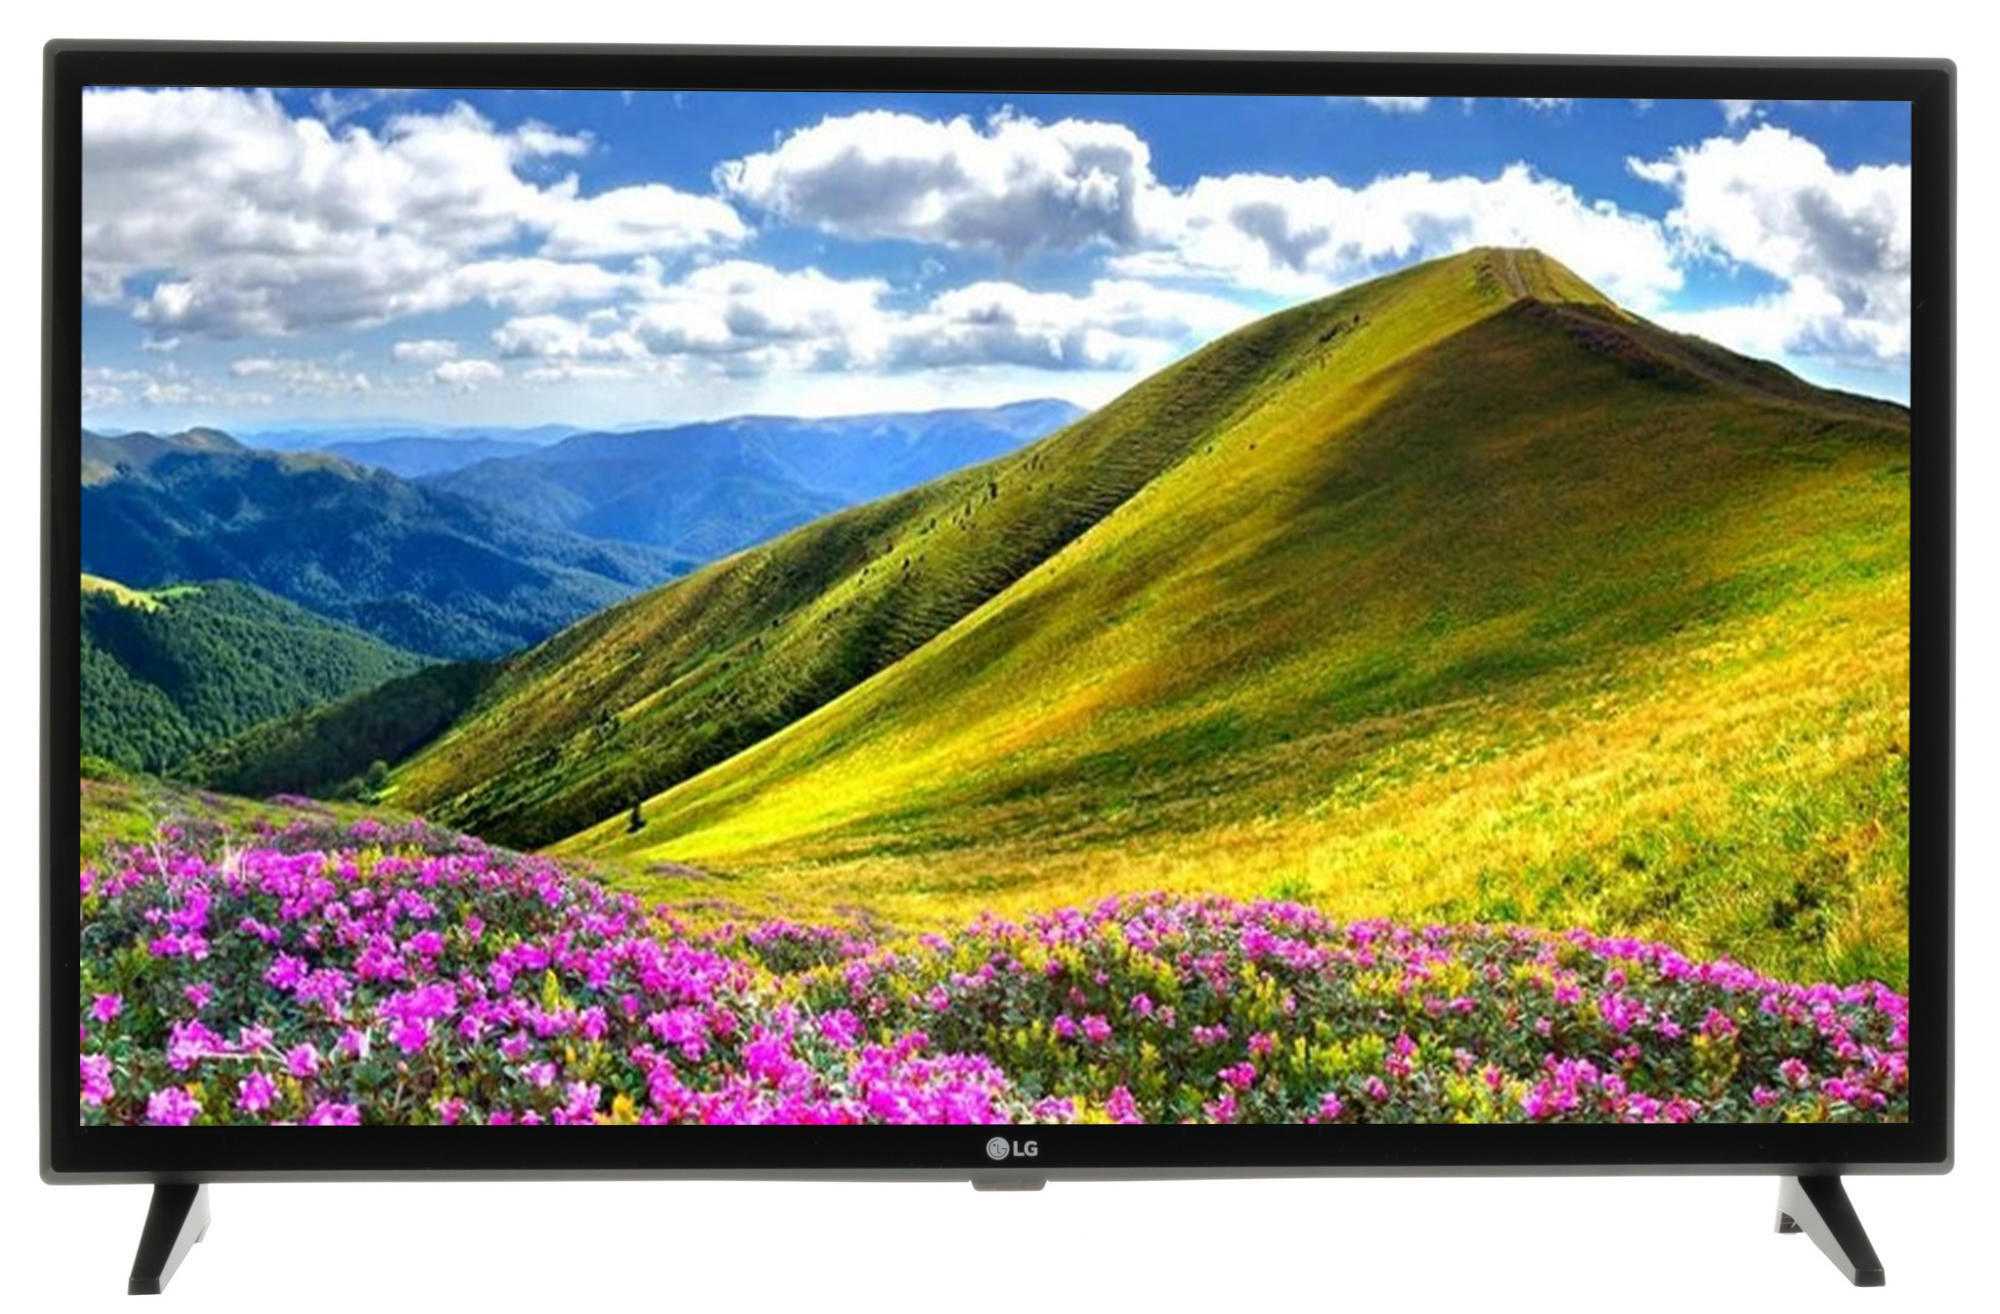 Телевизор LG 32LJ610V - подробные характеристики обзоры видео фото Цены в интернет-магазинах где можно купить телевизор LG 32LJ610V